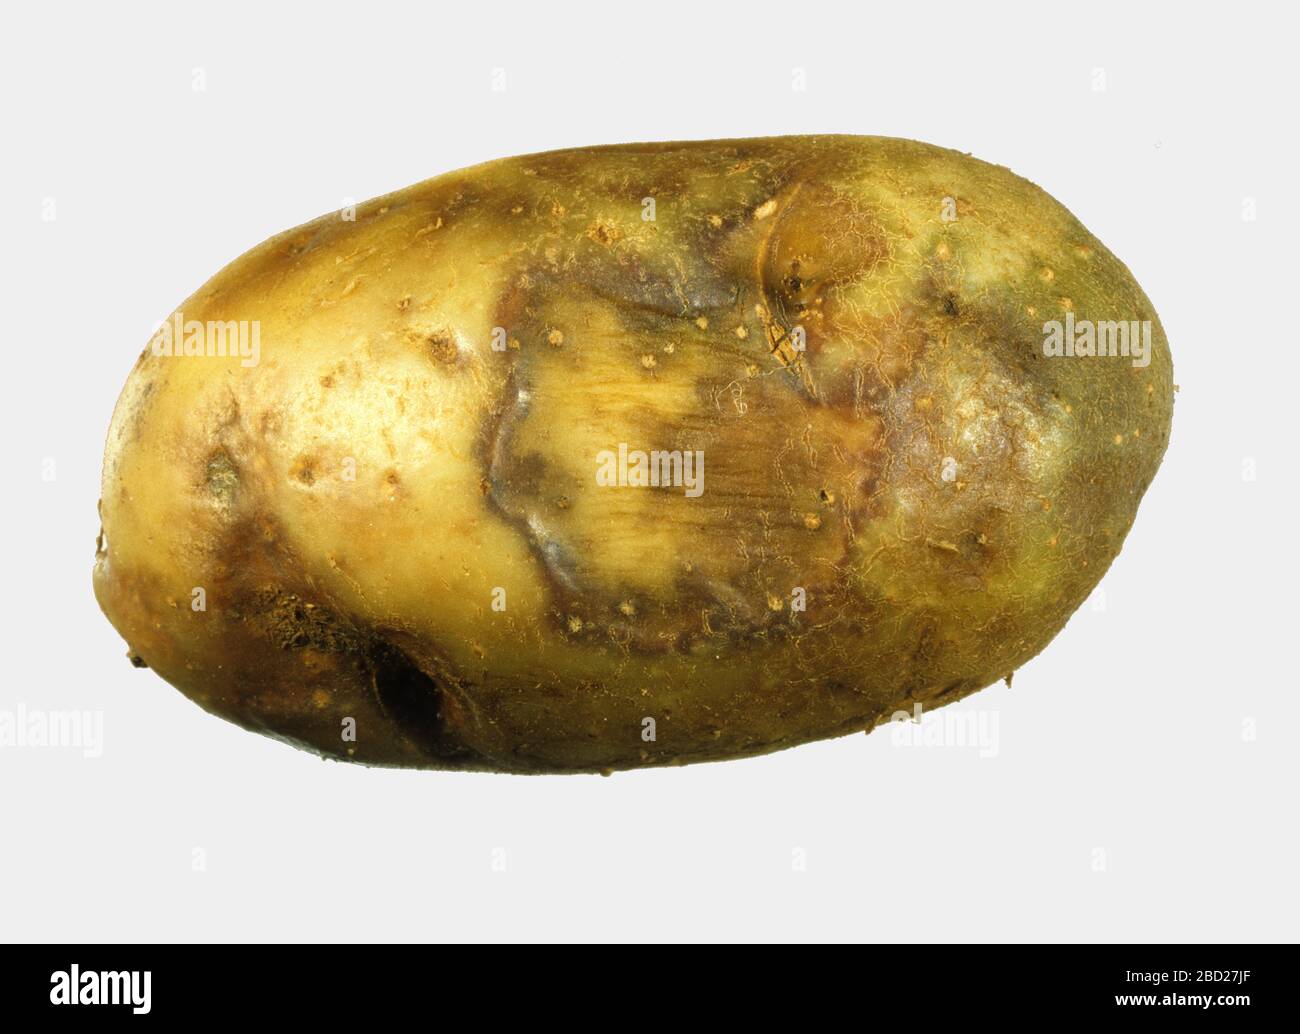 Kartoffelknolle aus einer Ernte mit Spätblitze (Phtophthora infestans), die Verfärbung durch Oomycete-Infektionen zeigt Stockfoto